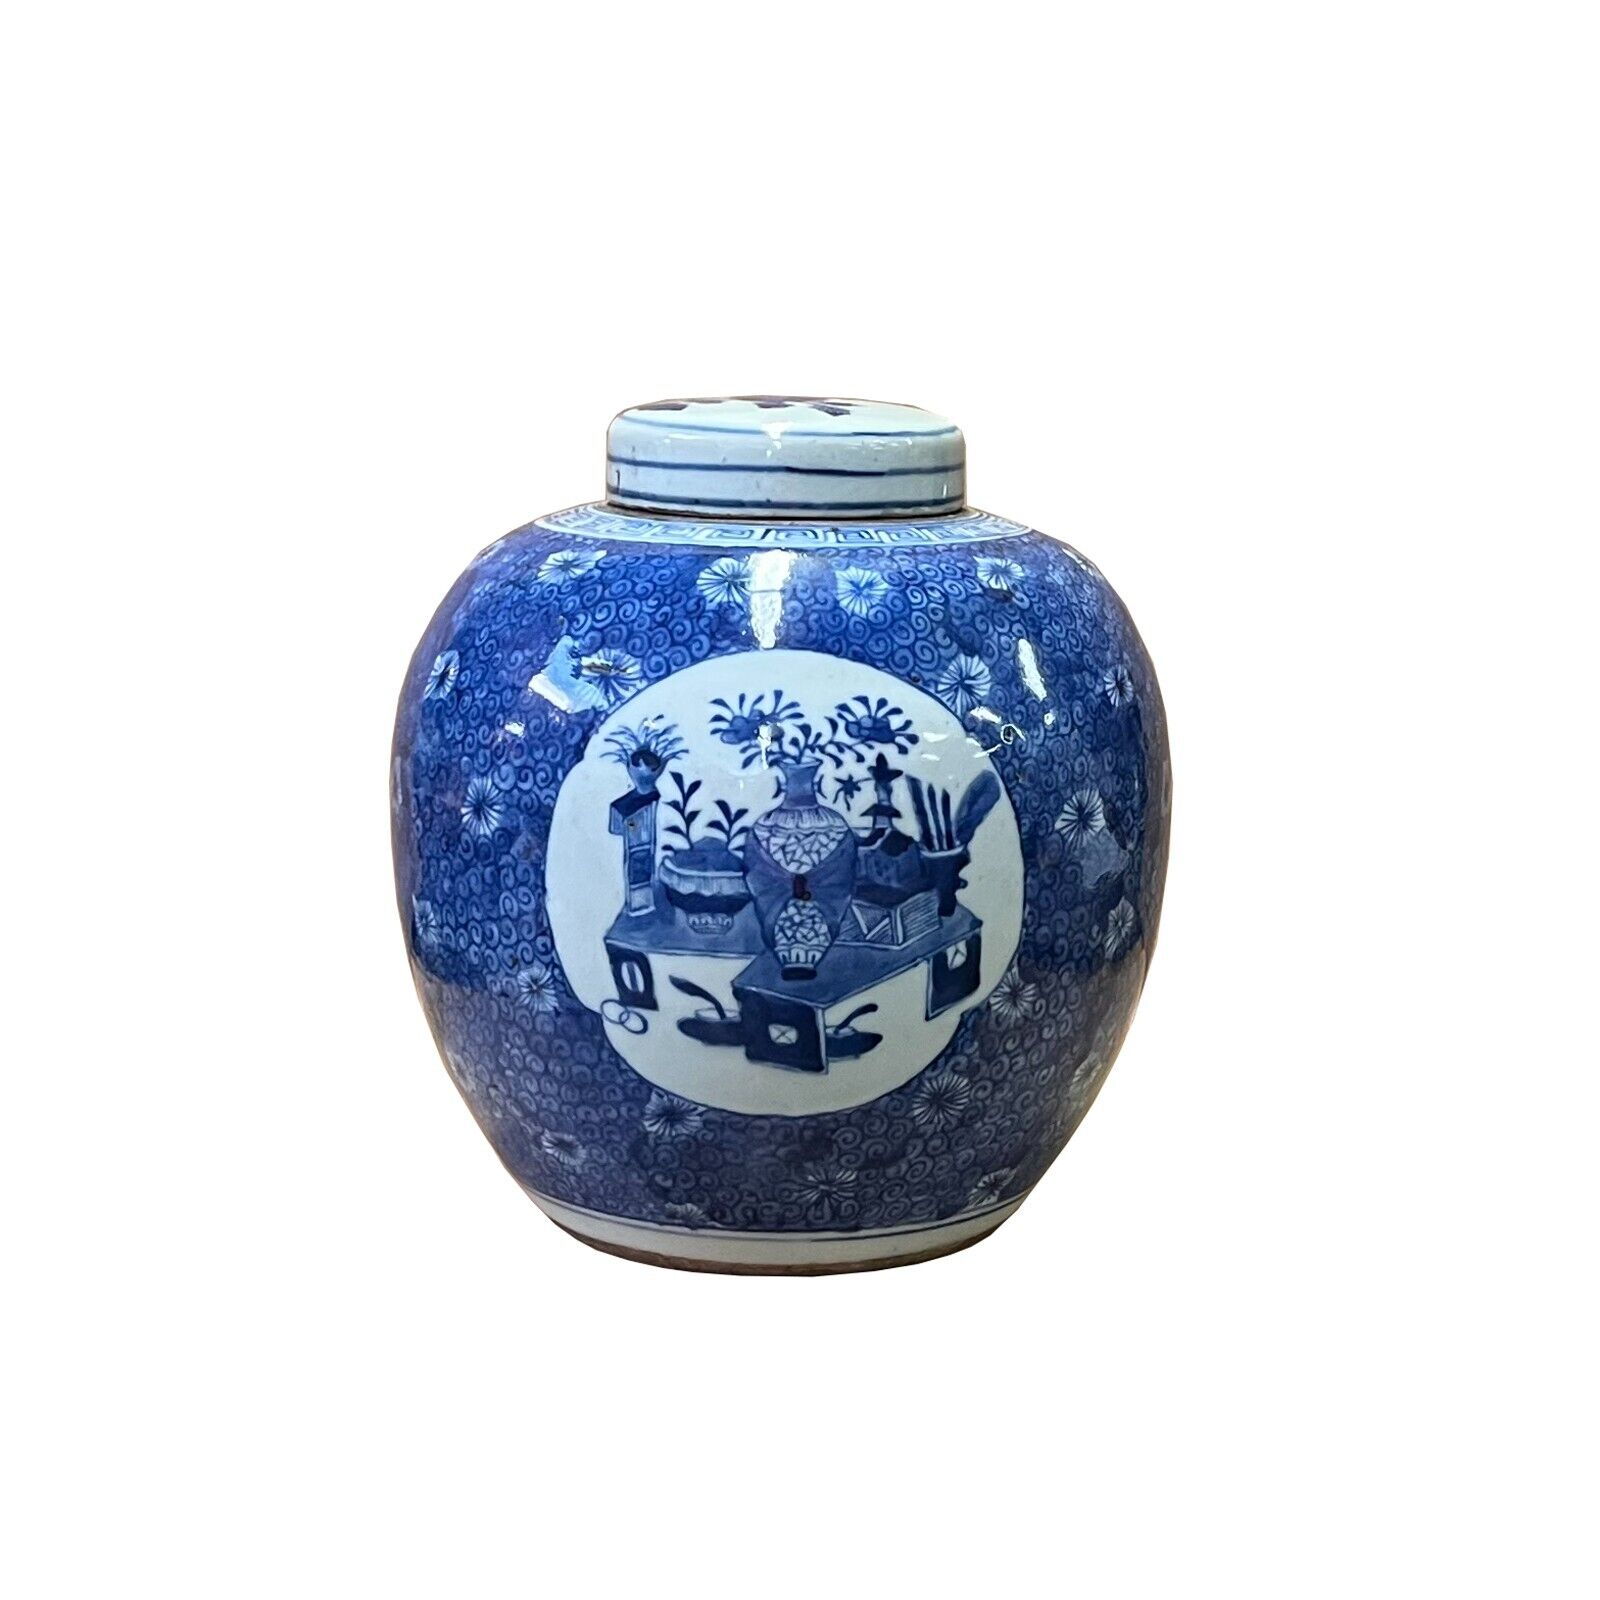 Oriental Hand-paint Flower Vases Blue White Porcelain Ginger Jar ws2543